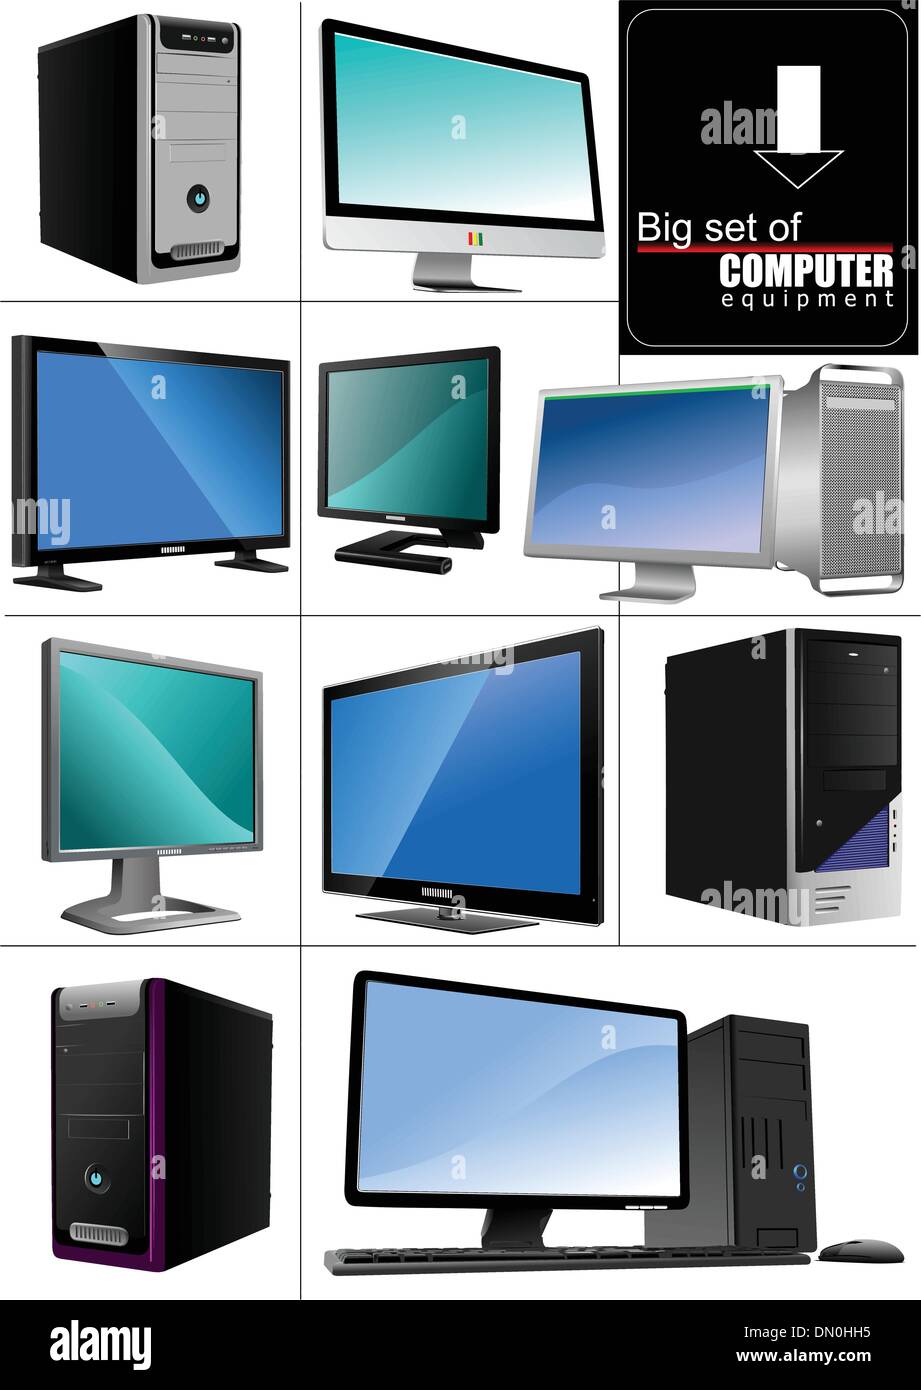 Big set of computer equipment. Server stations. Mac. Stock Vector